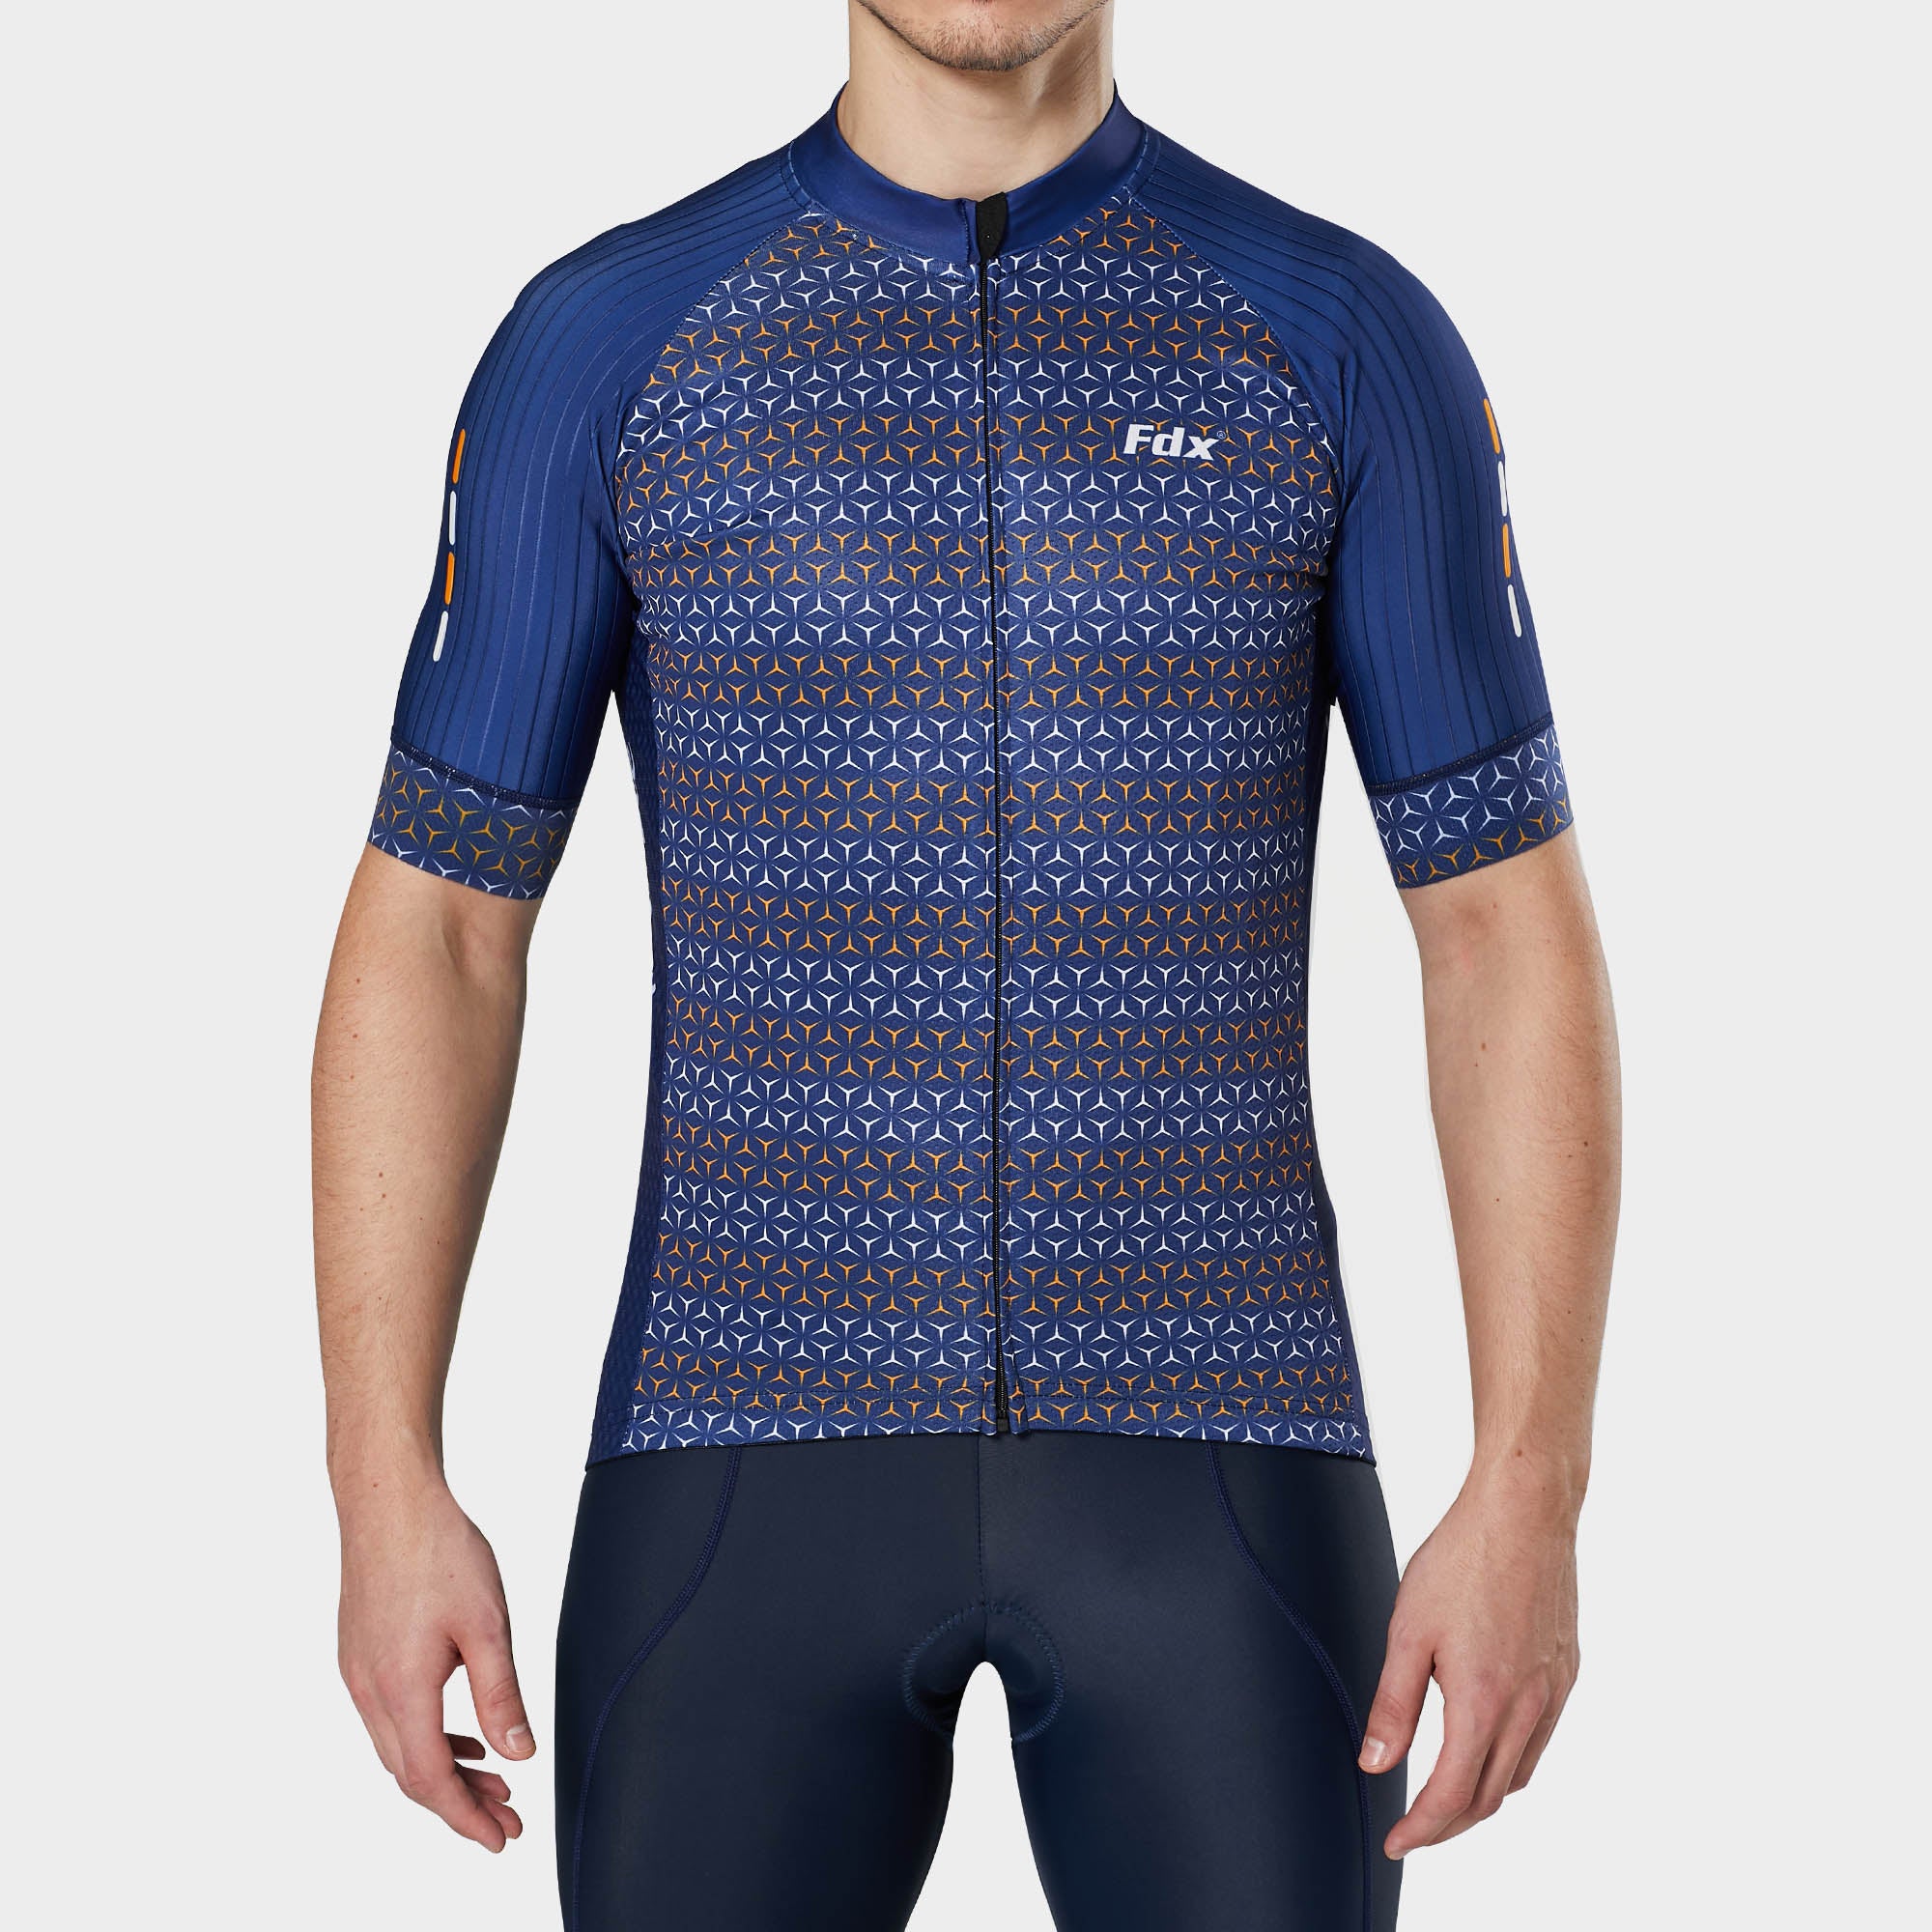 Fdx Mens Blue Short Sleeve Cycling Jersey for Summer Best Road Bike Wear Top Light Weight, Full Zipper, Pockets & Hi-viz Reflectors - Vega